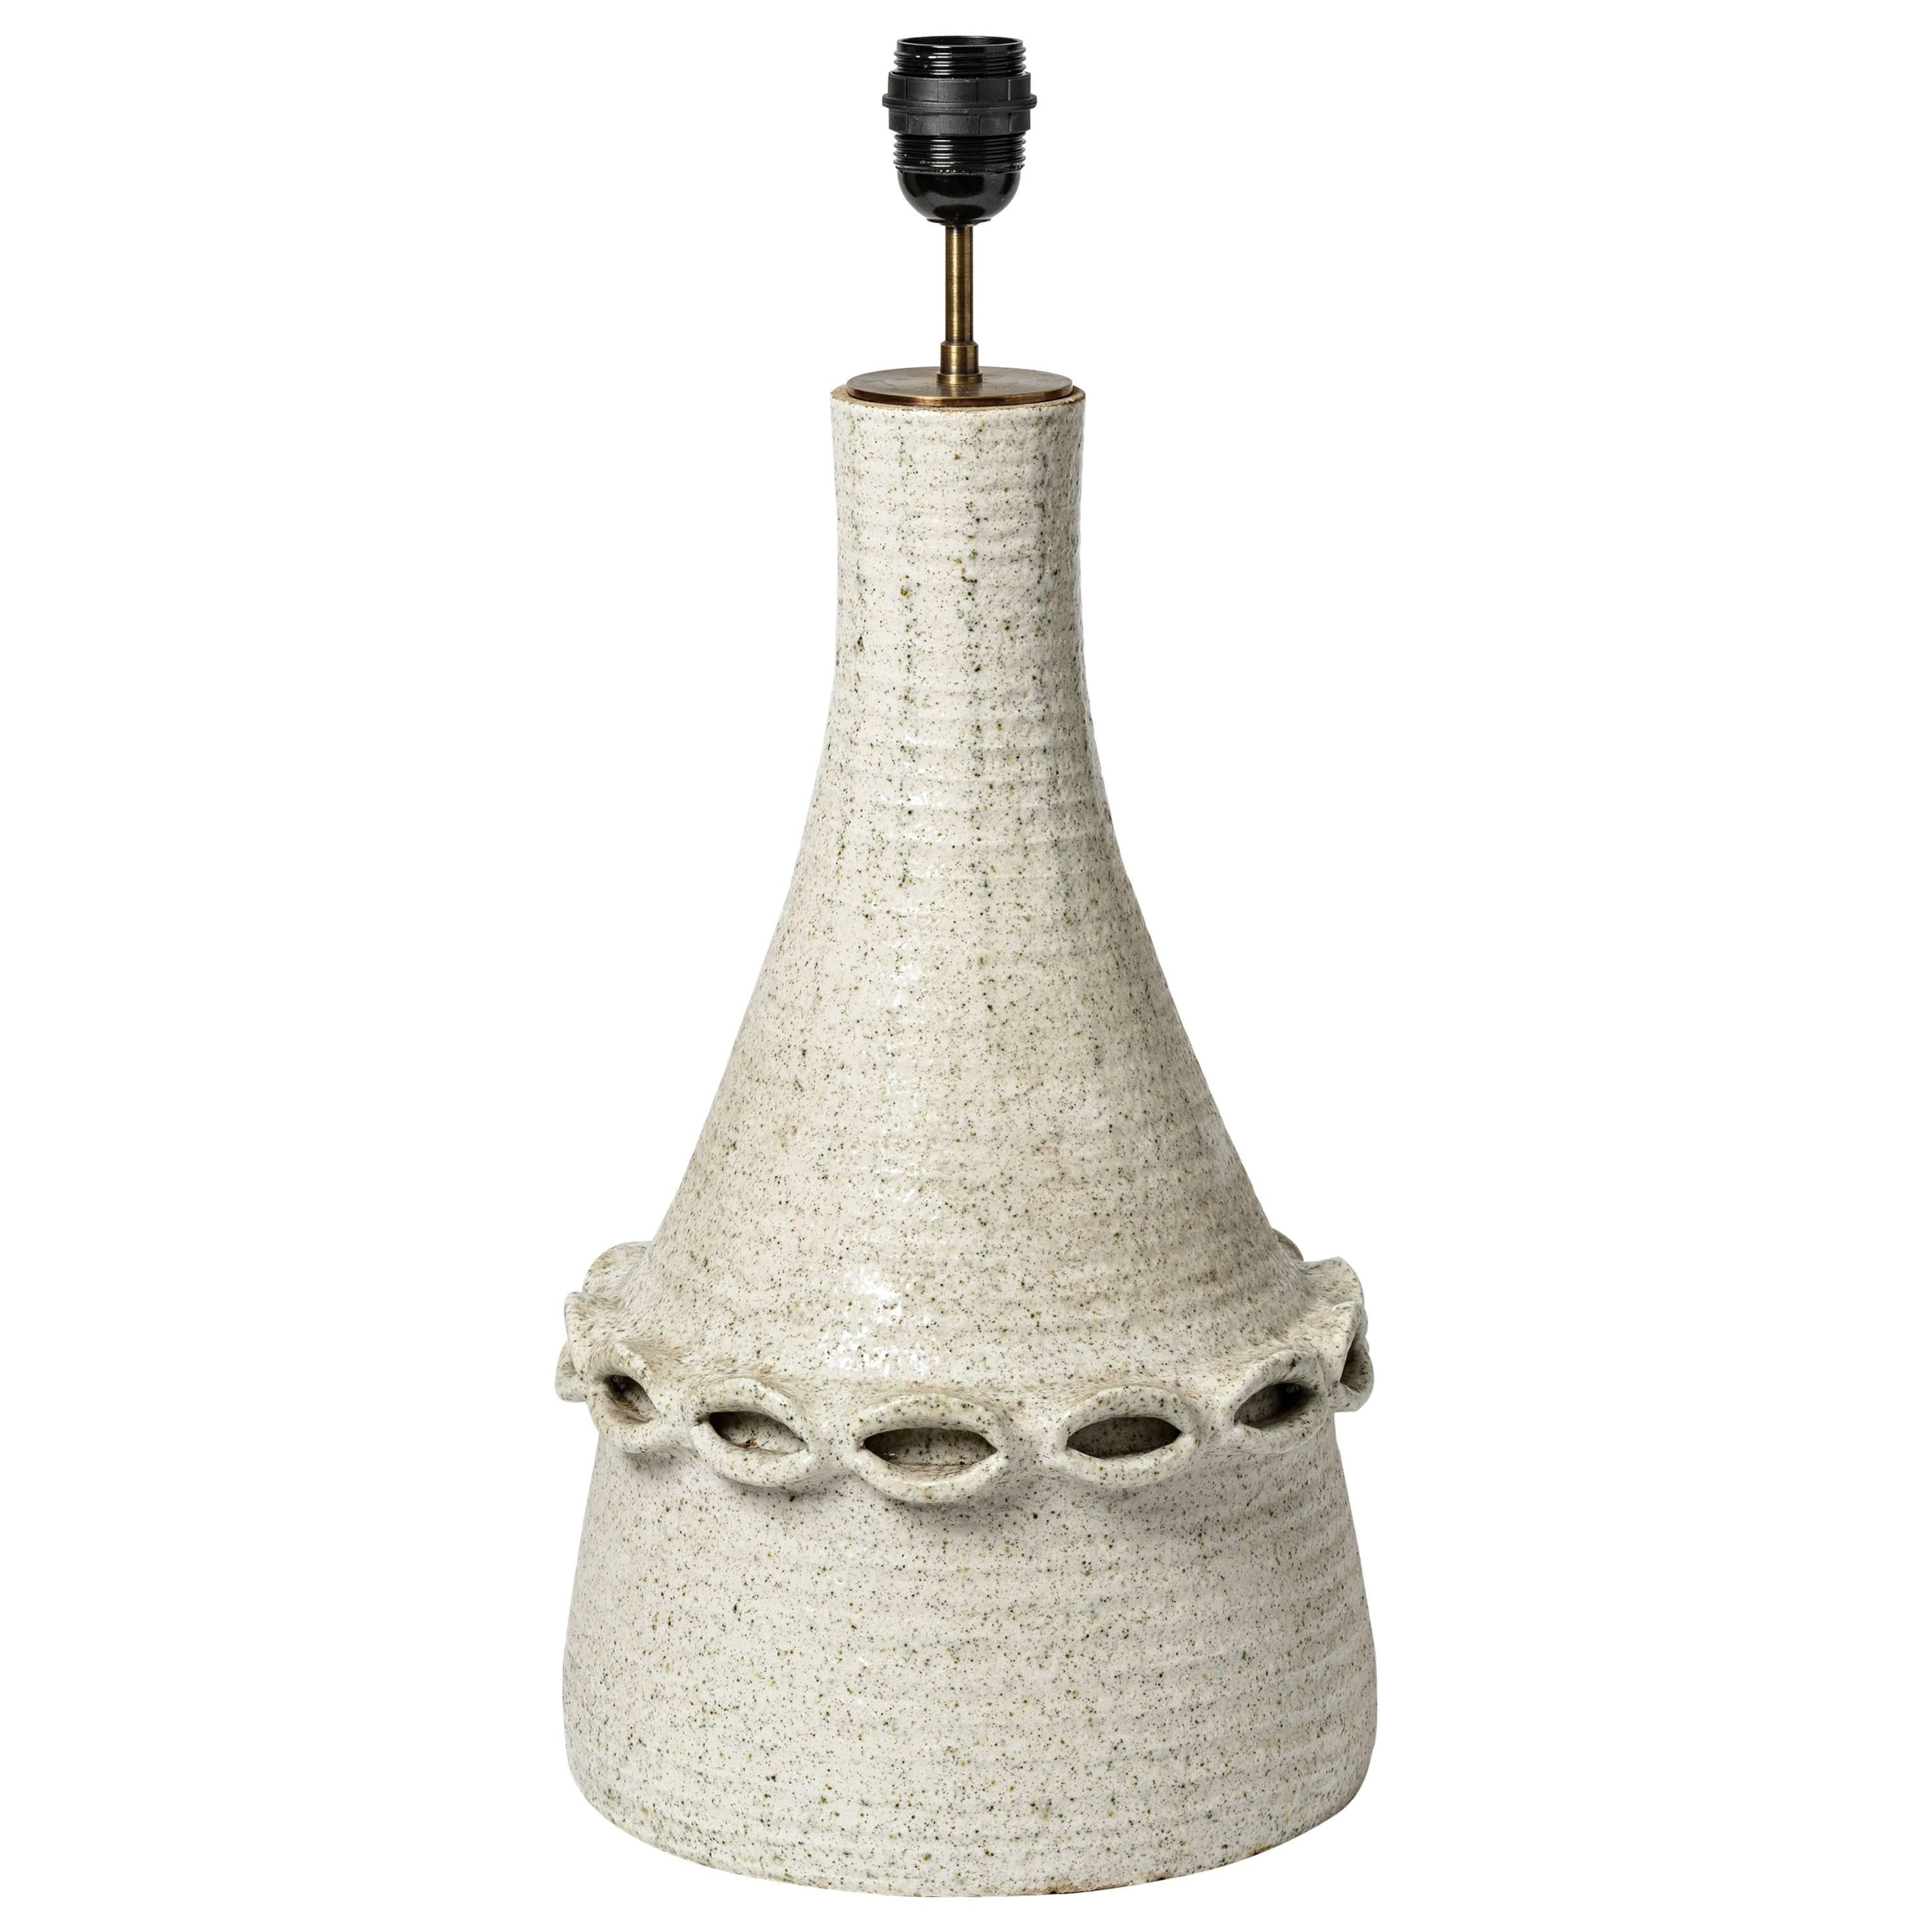 Lampe en céramique par Accolay avec décoration en glaçure blanche, vers 1970